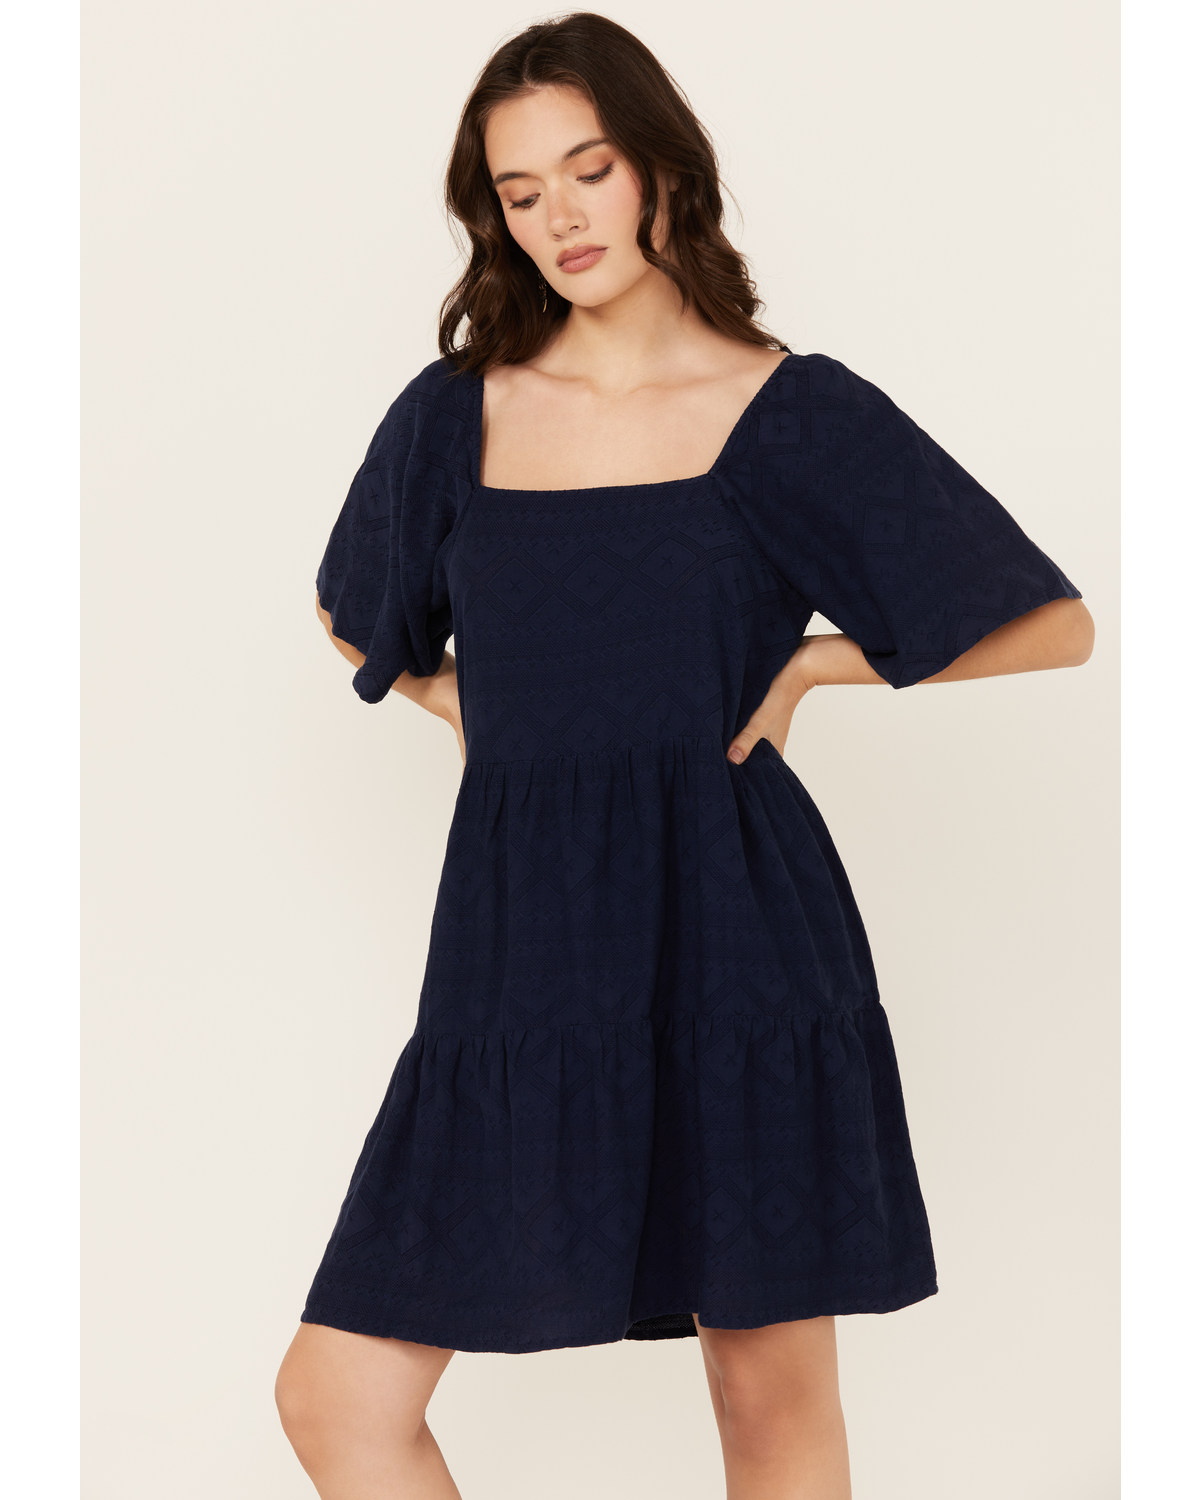 Wrangler Women's Solid Short Sleeve Mini Dress